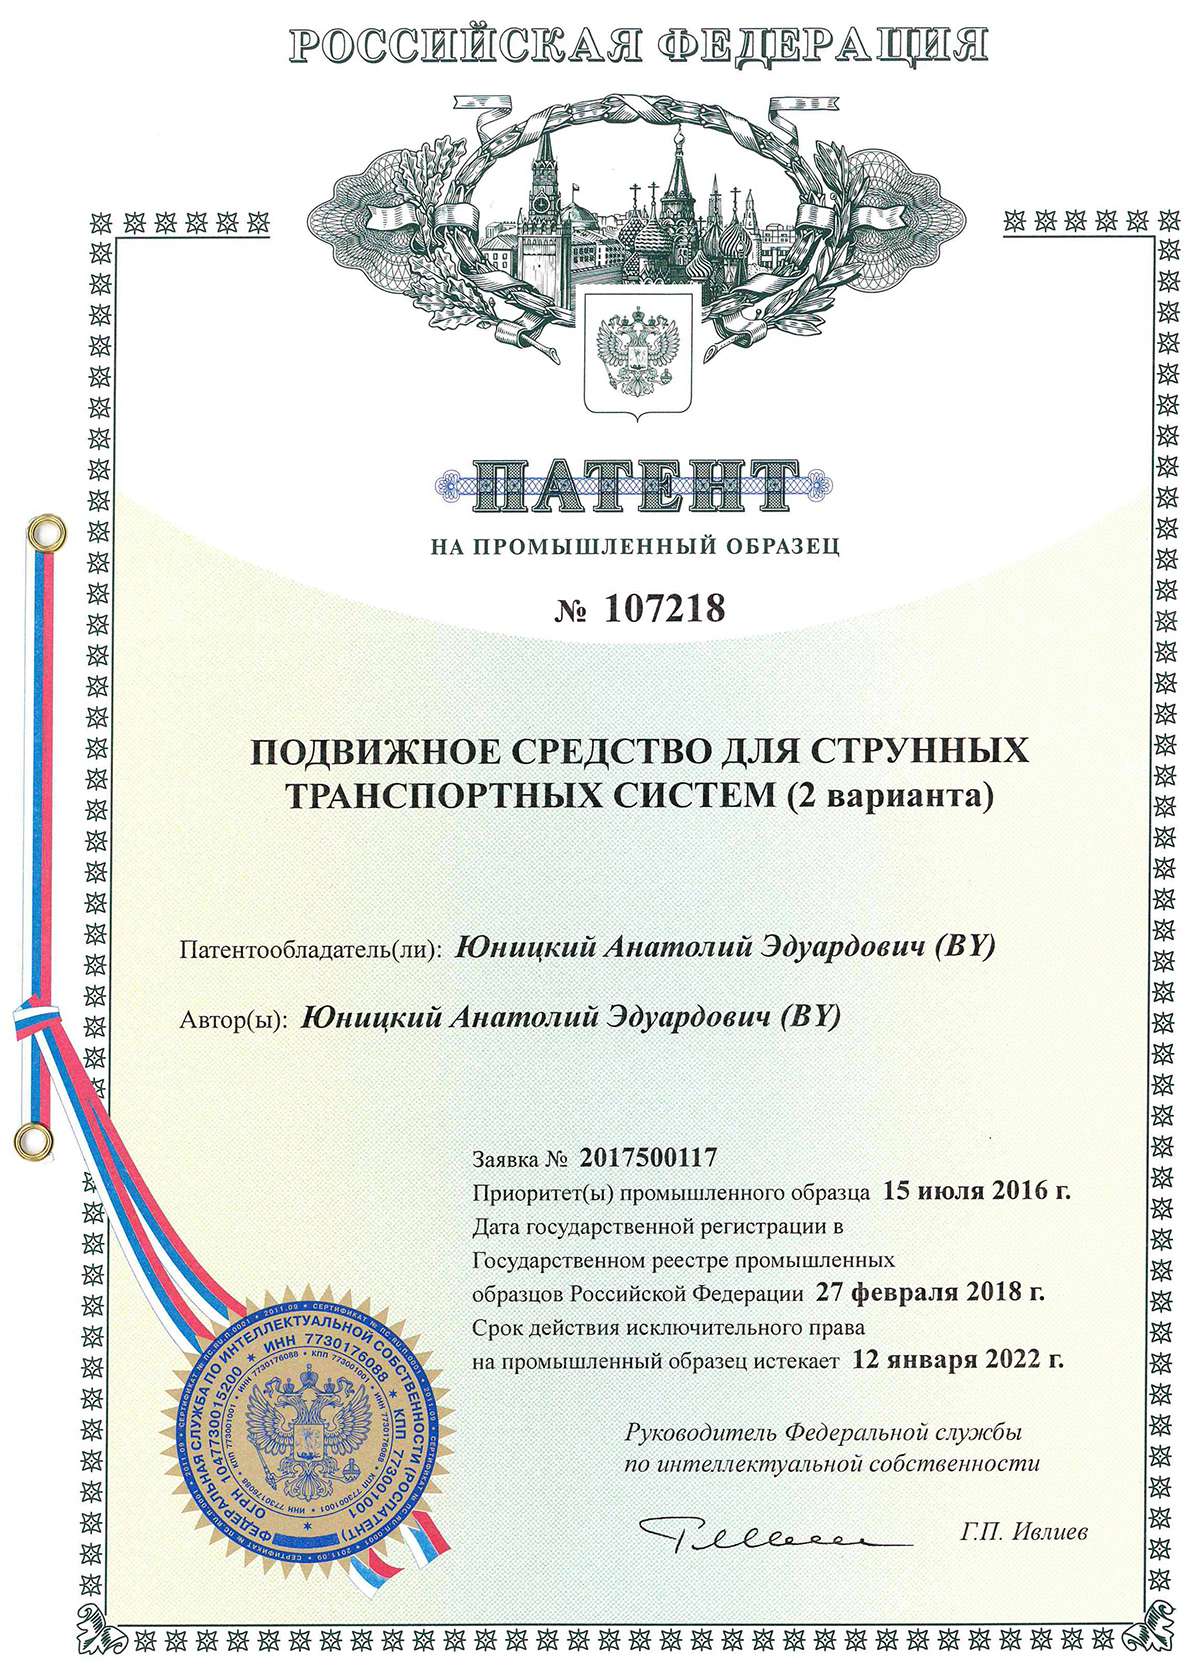 Патент № 107218 — Подвижное средство для струнных транспортных систем